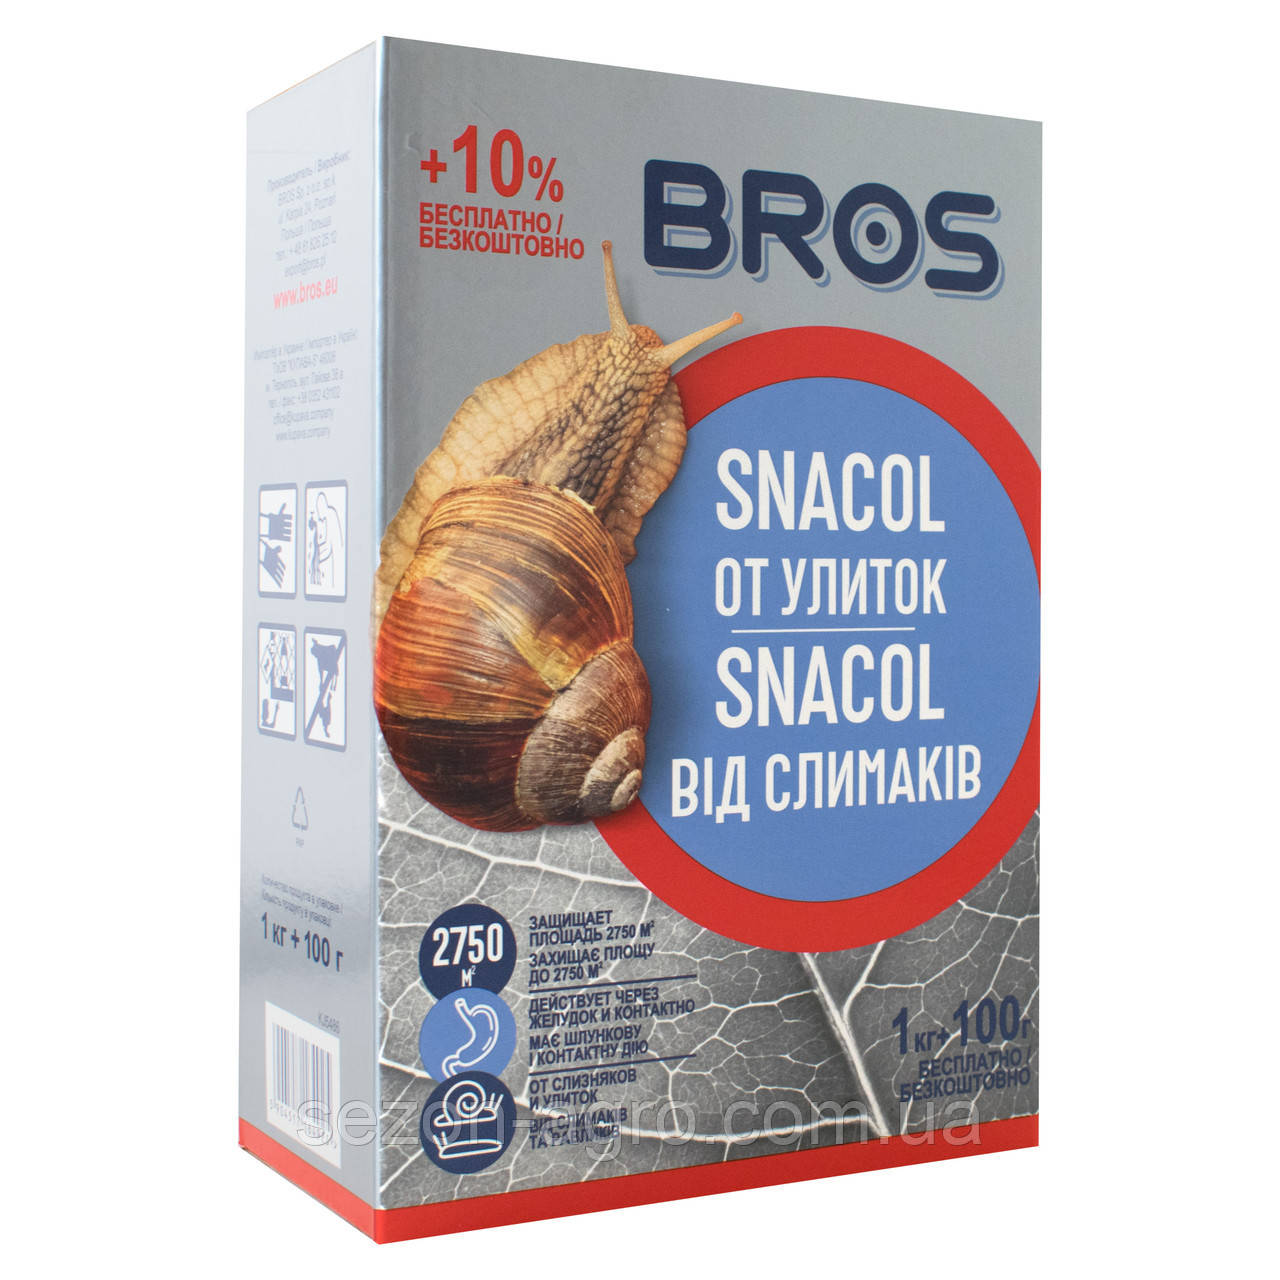 Лимацидний засіб Bros Snacol від слимаків 1 кг